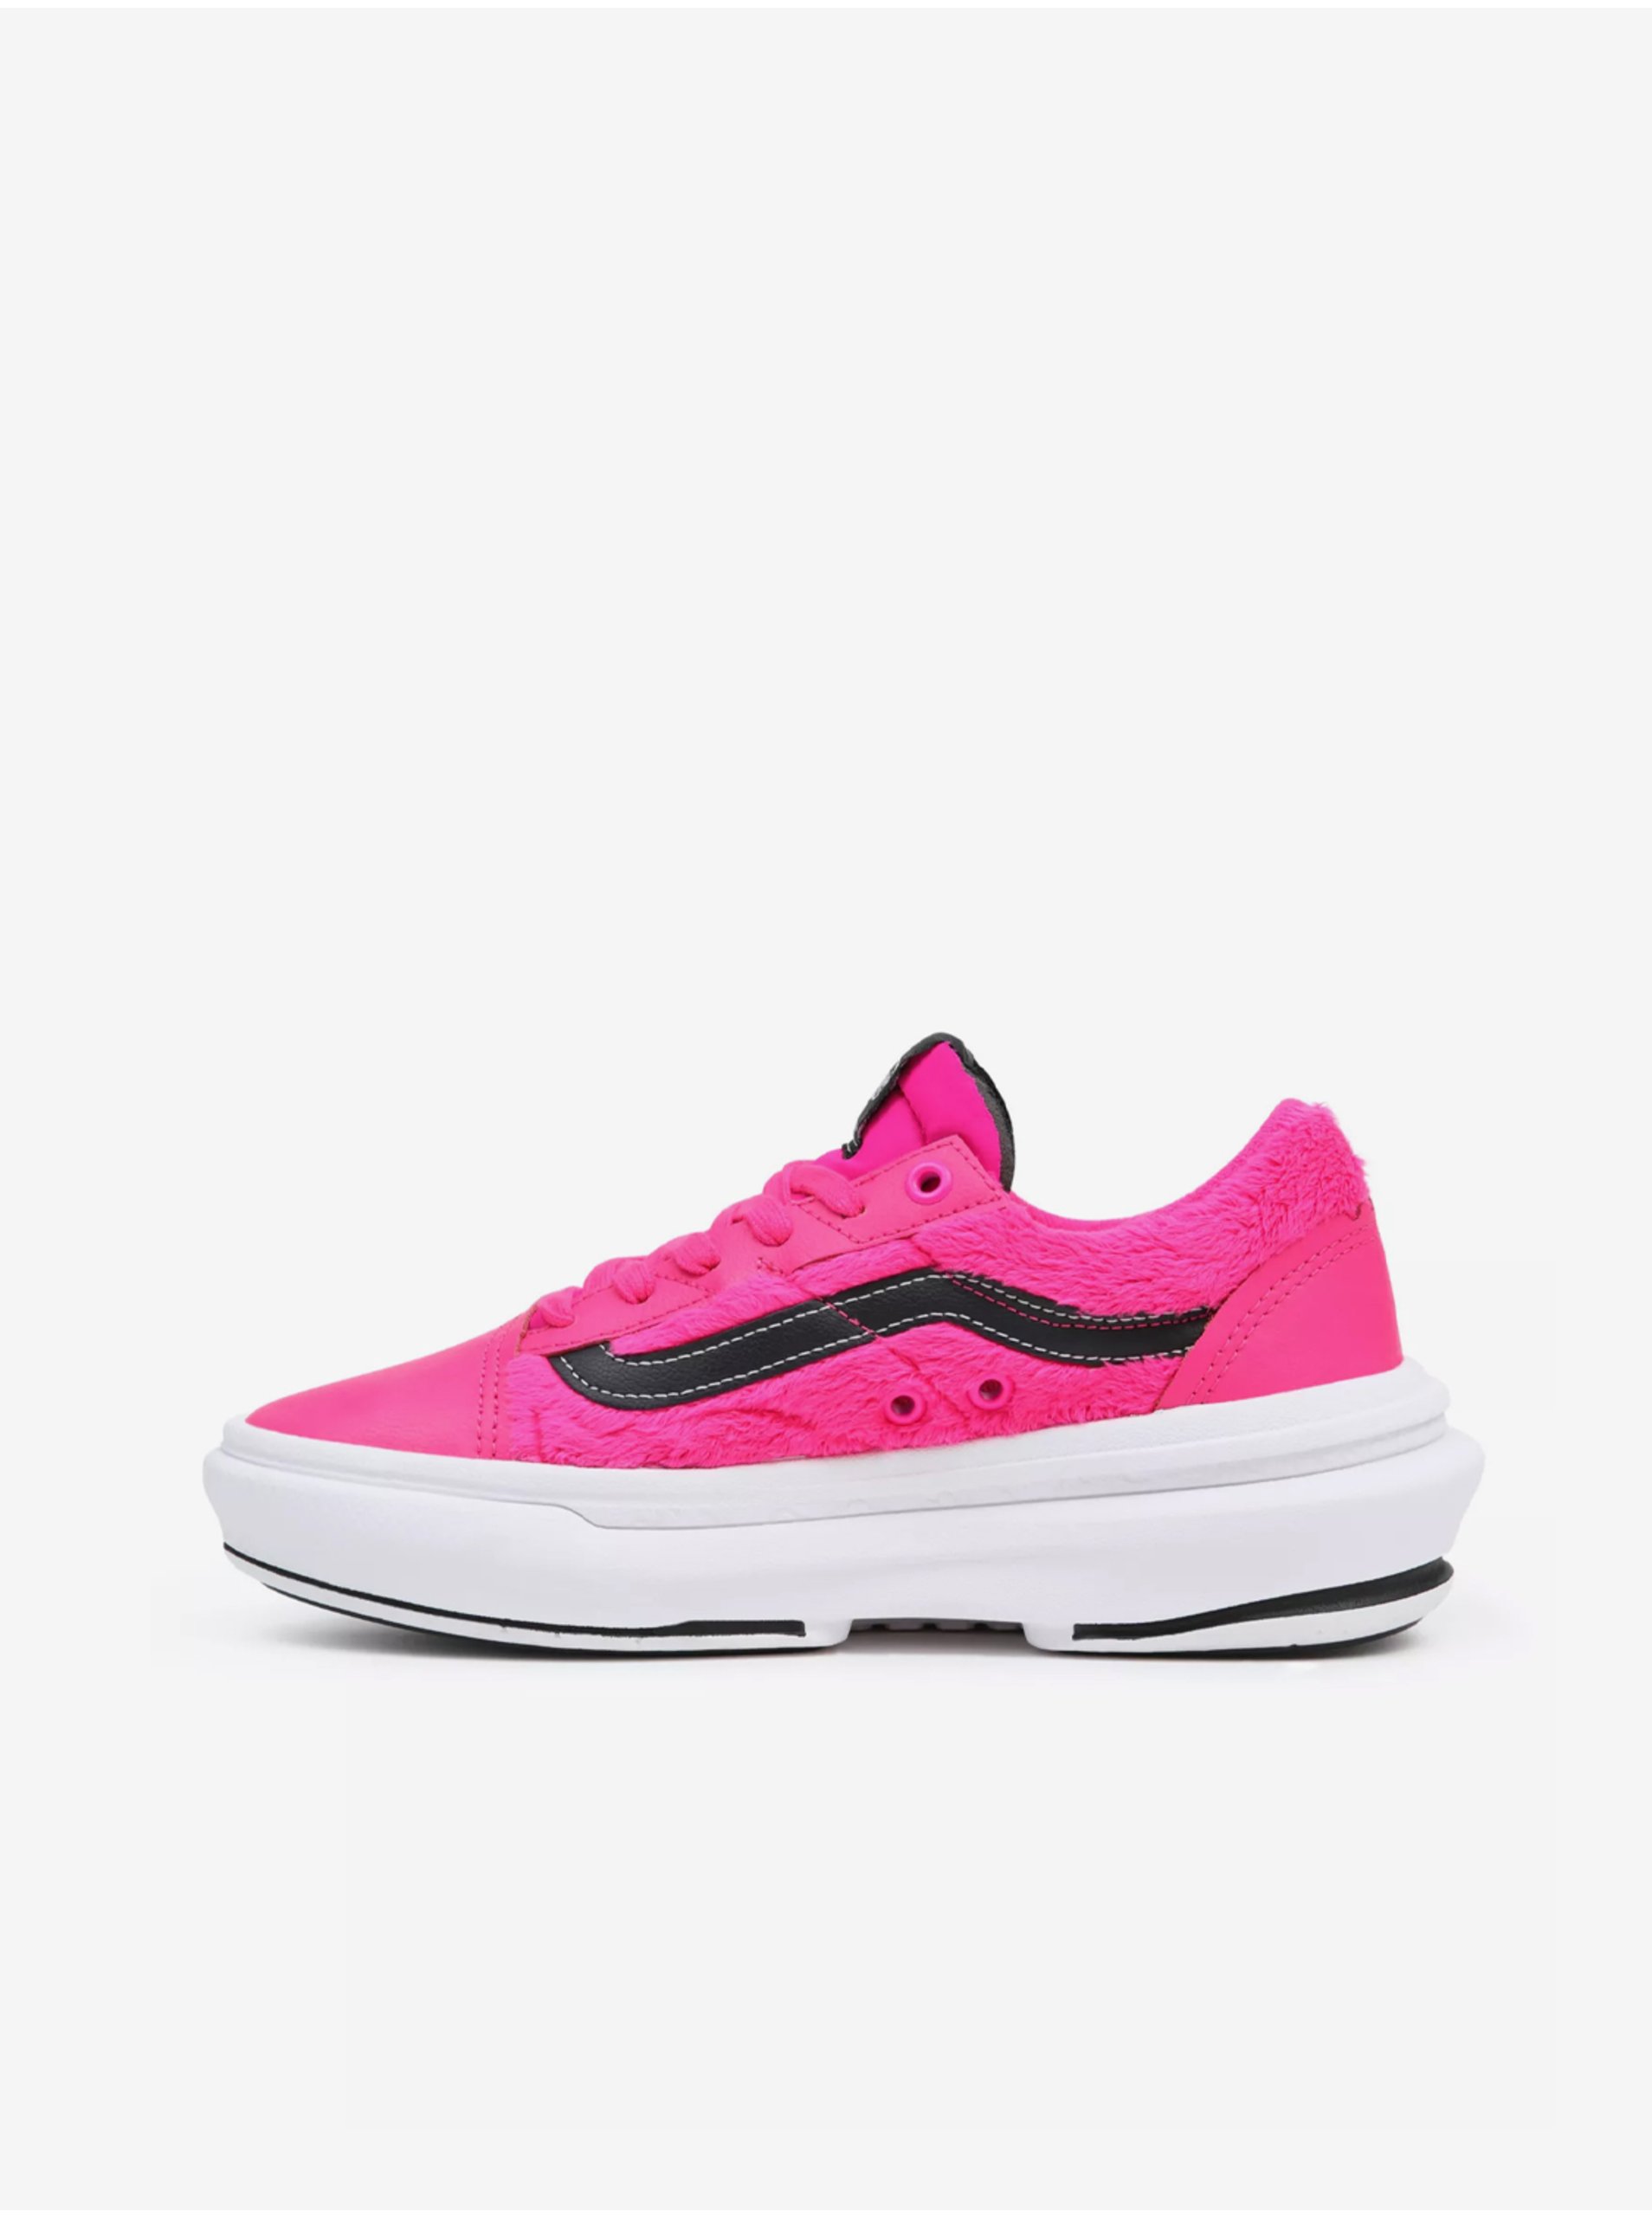 Neon Pink Women's Sneakers with Leather Details VANS - Women